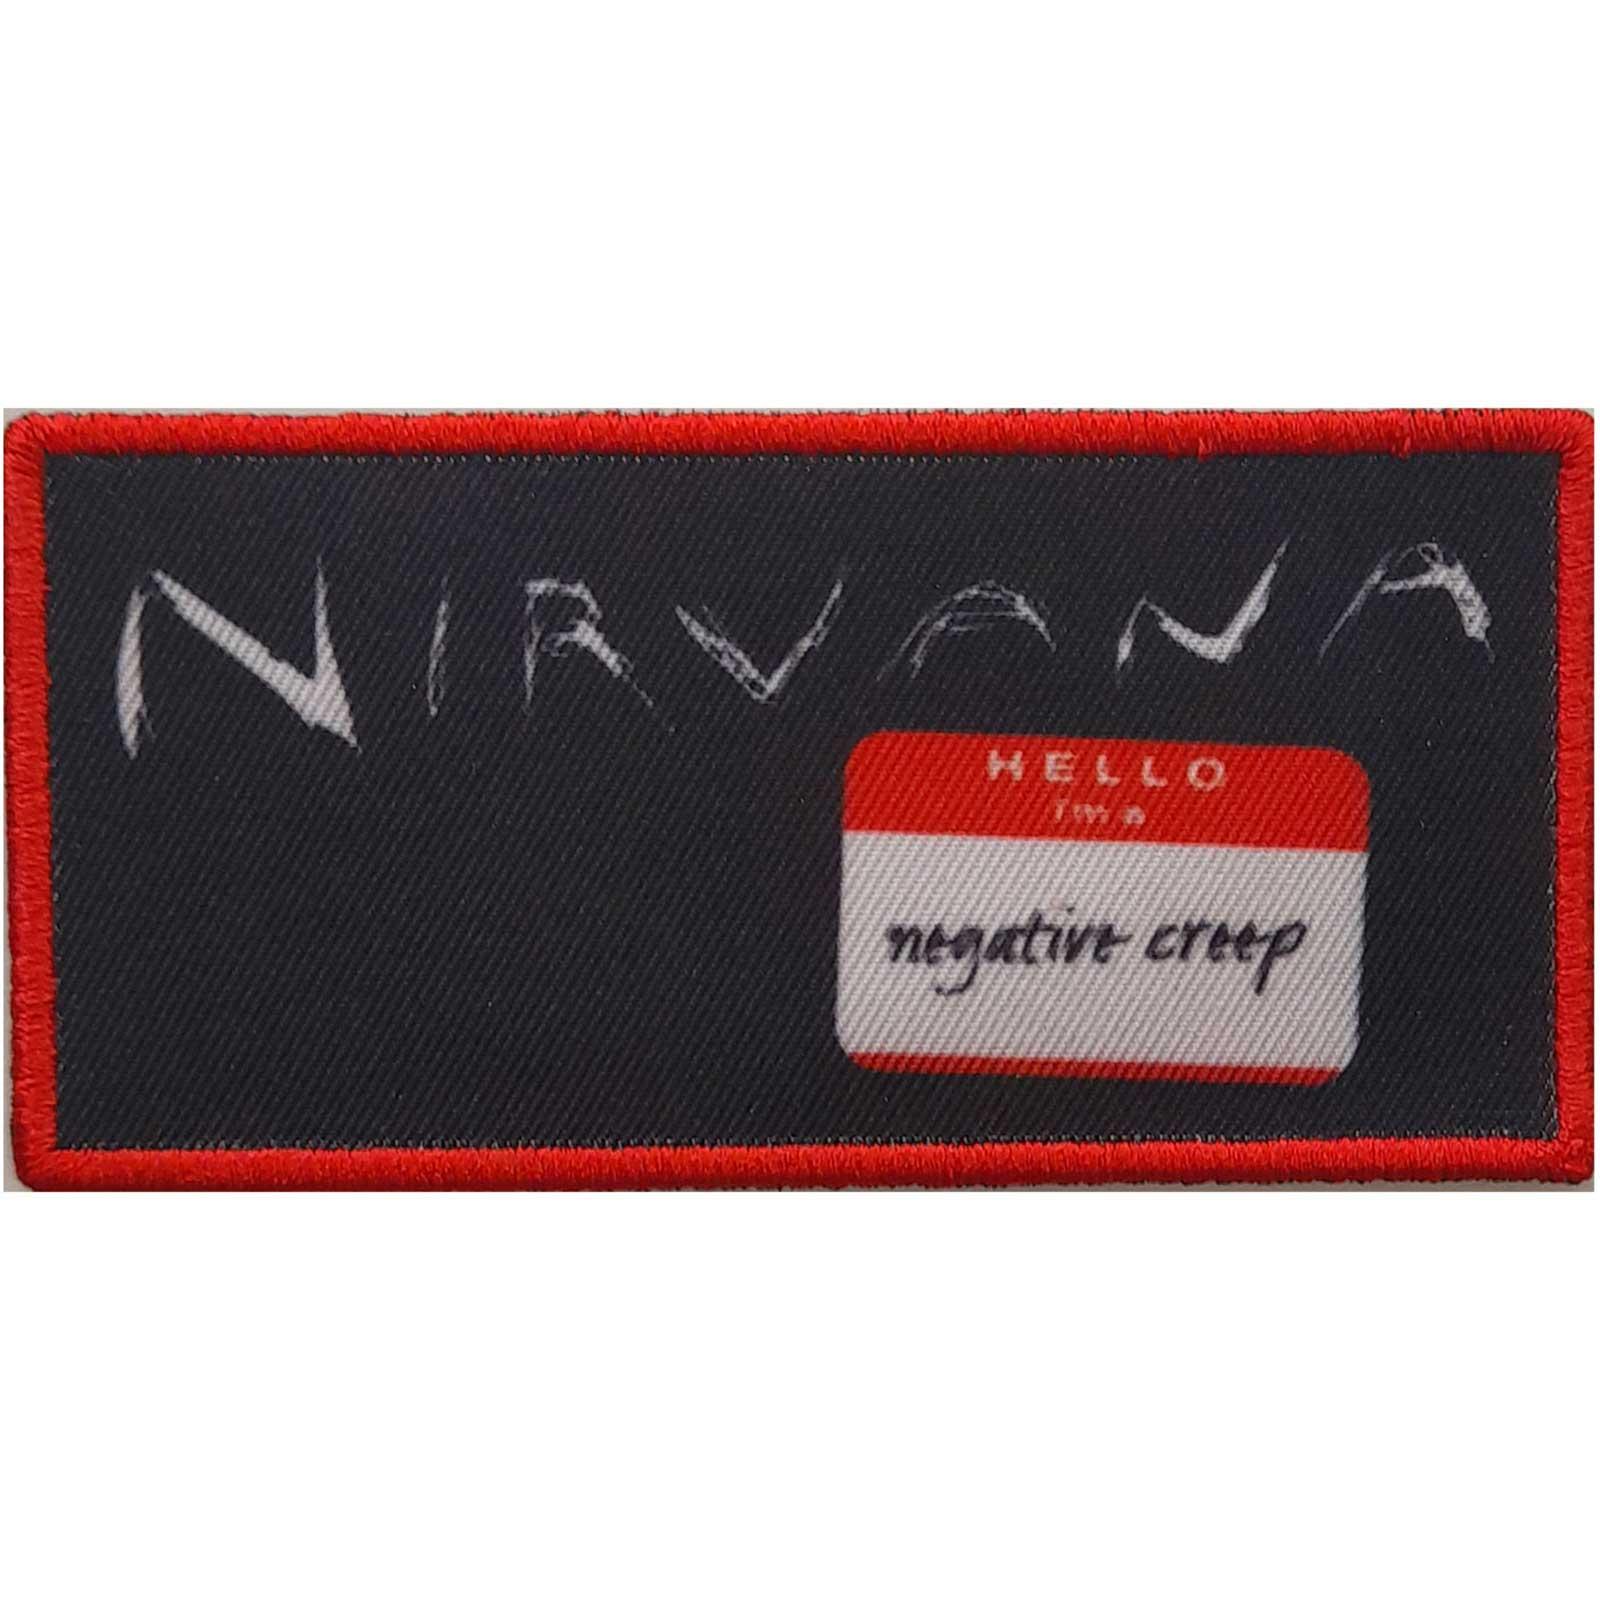 (ニルヴァーナ) Nirvana オフィシャル商品 Negative Creep ワッペン アイロン接着 パッチ 【海外通販】